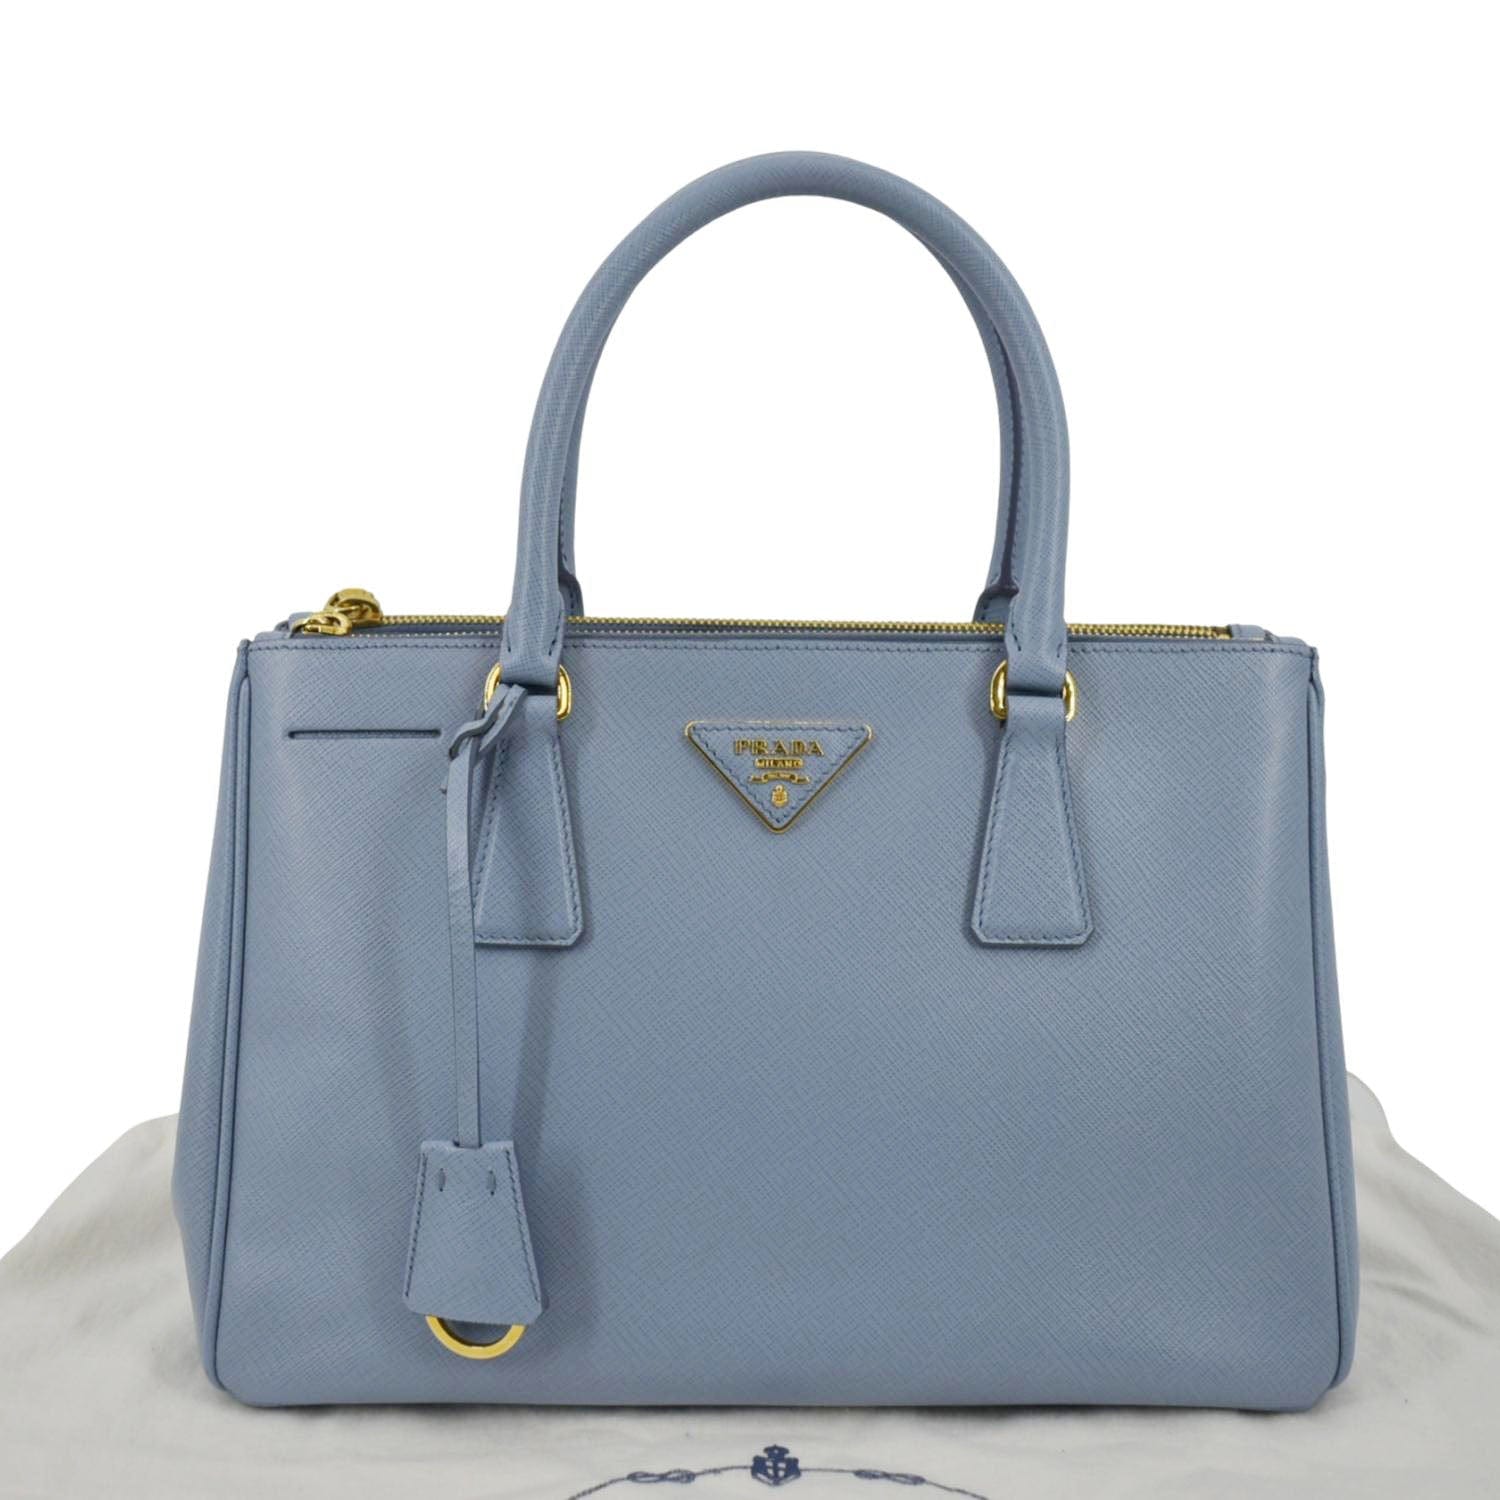 Prada Saffiano Lux Leather Tote Bag